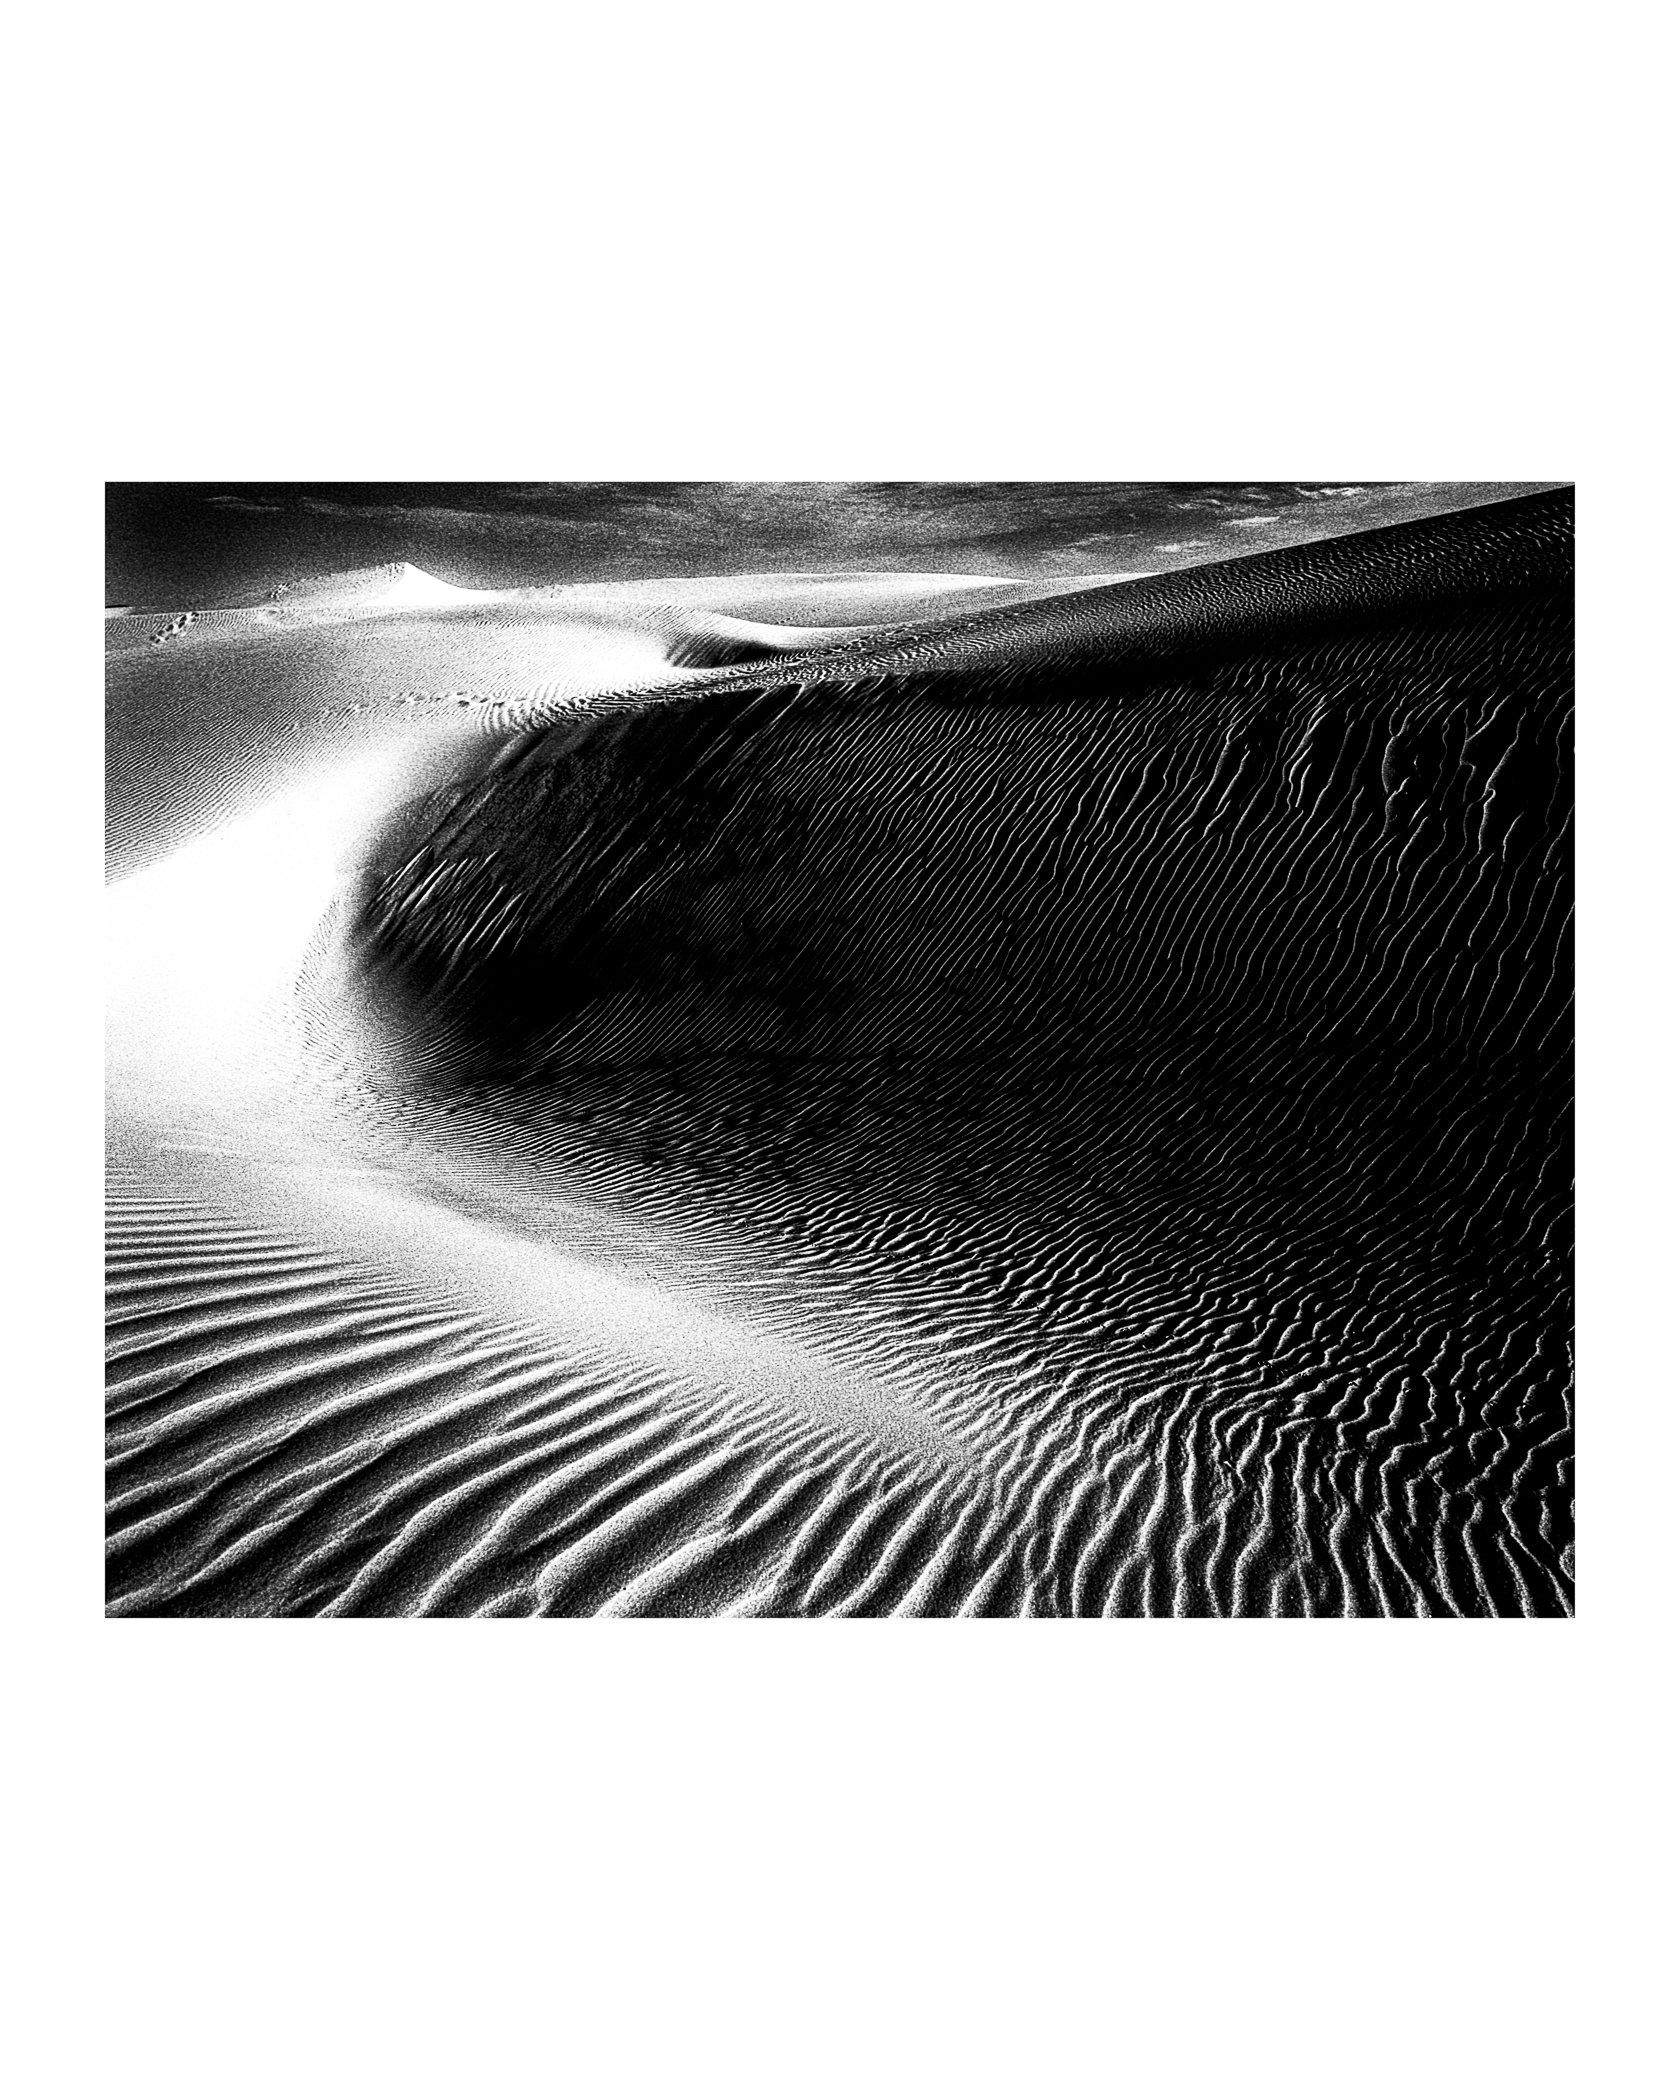 The Dunes 05